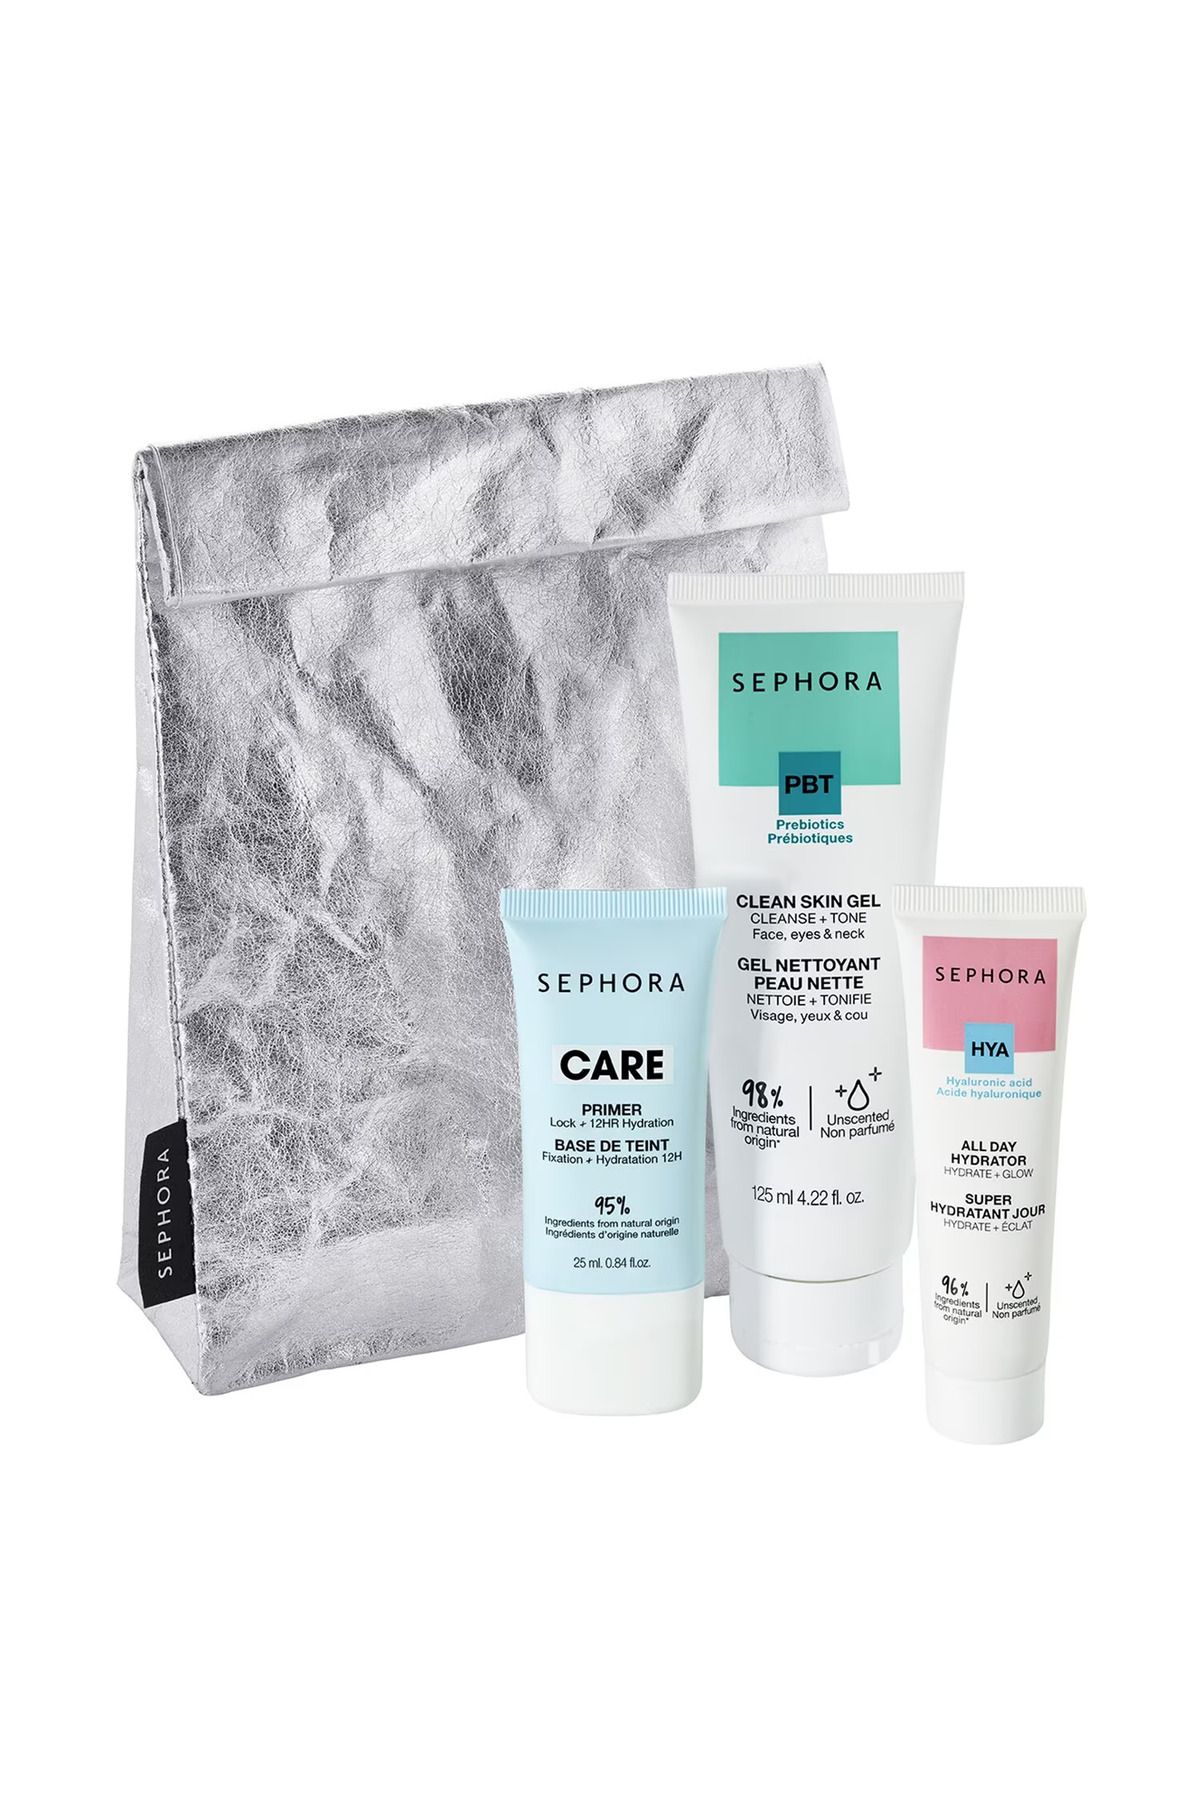 Sephora Clean Skin Gel-All Day Hydrator-Face Primer Yüz Bakım Seti